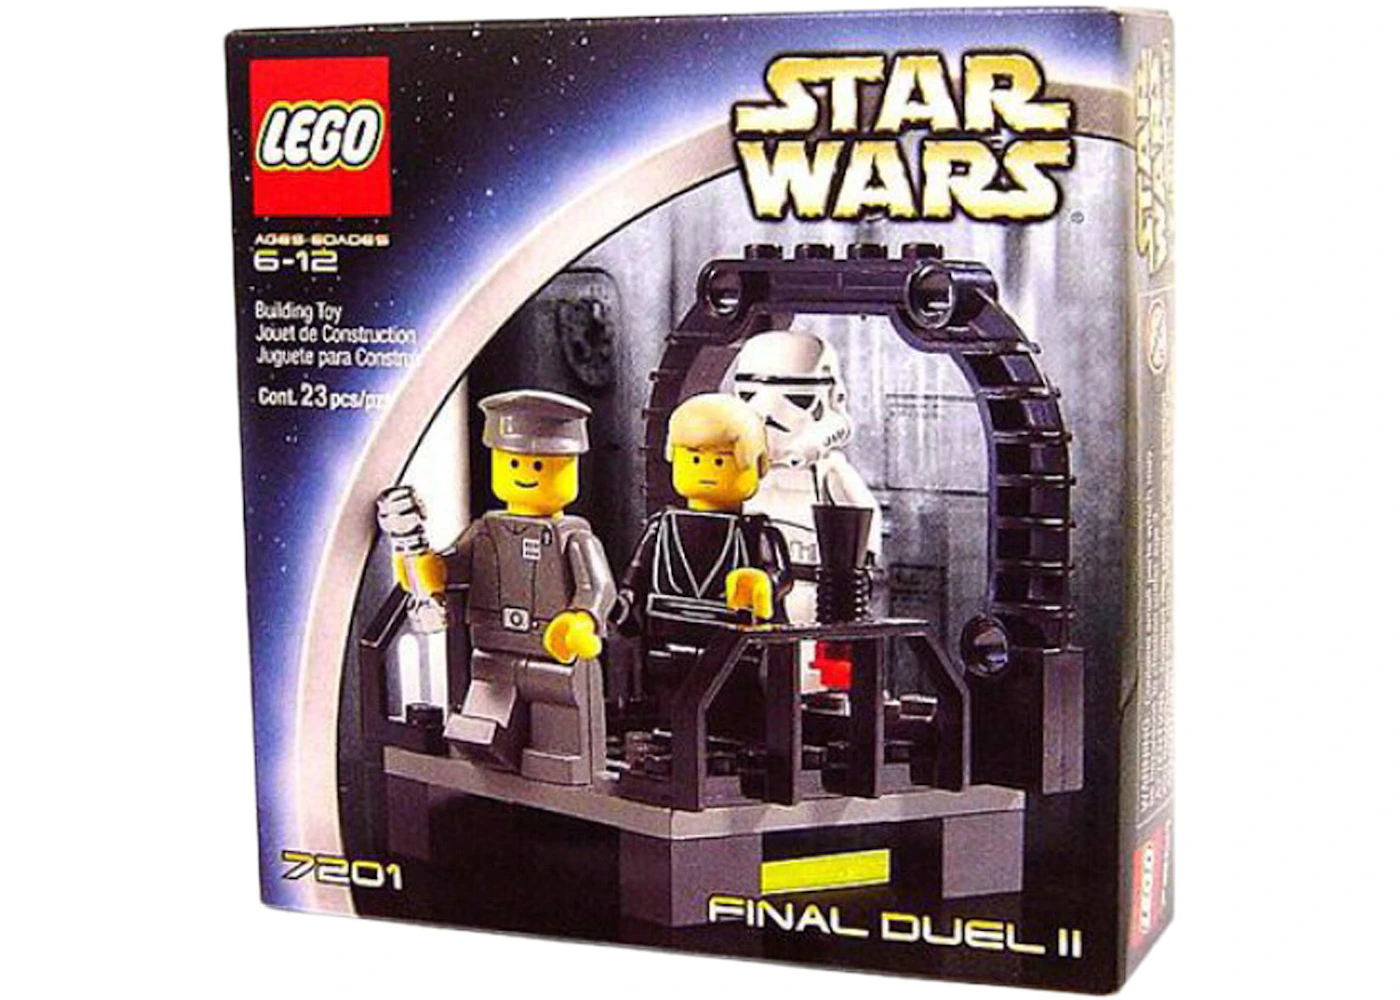 Alexander Graham Bell sengetøj Ødelæggelse LEGO Star Wars Return of the Jedi Final Duel II Set 7201 - US